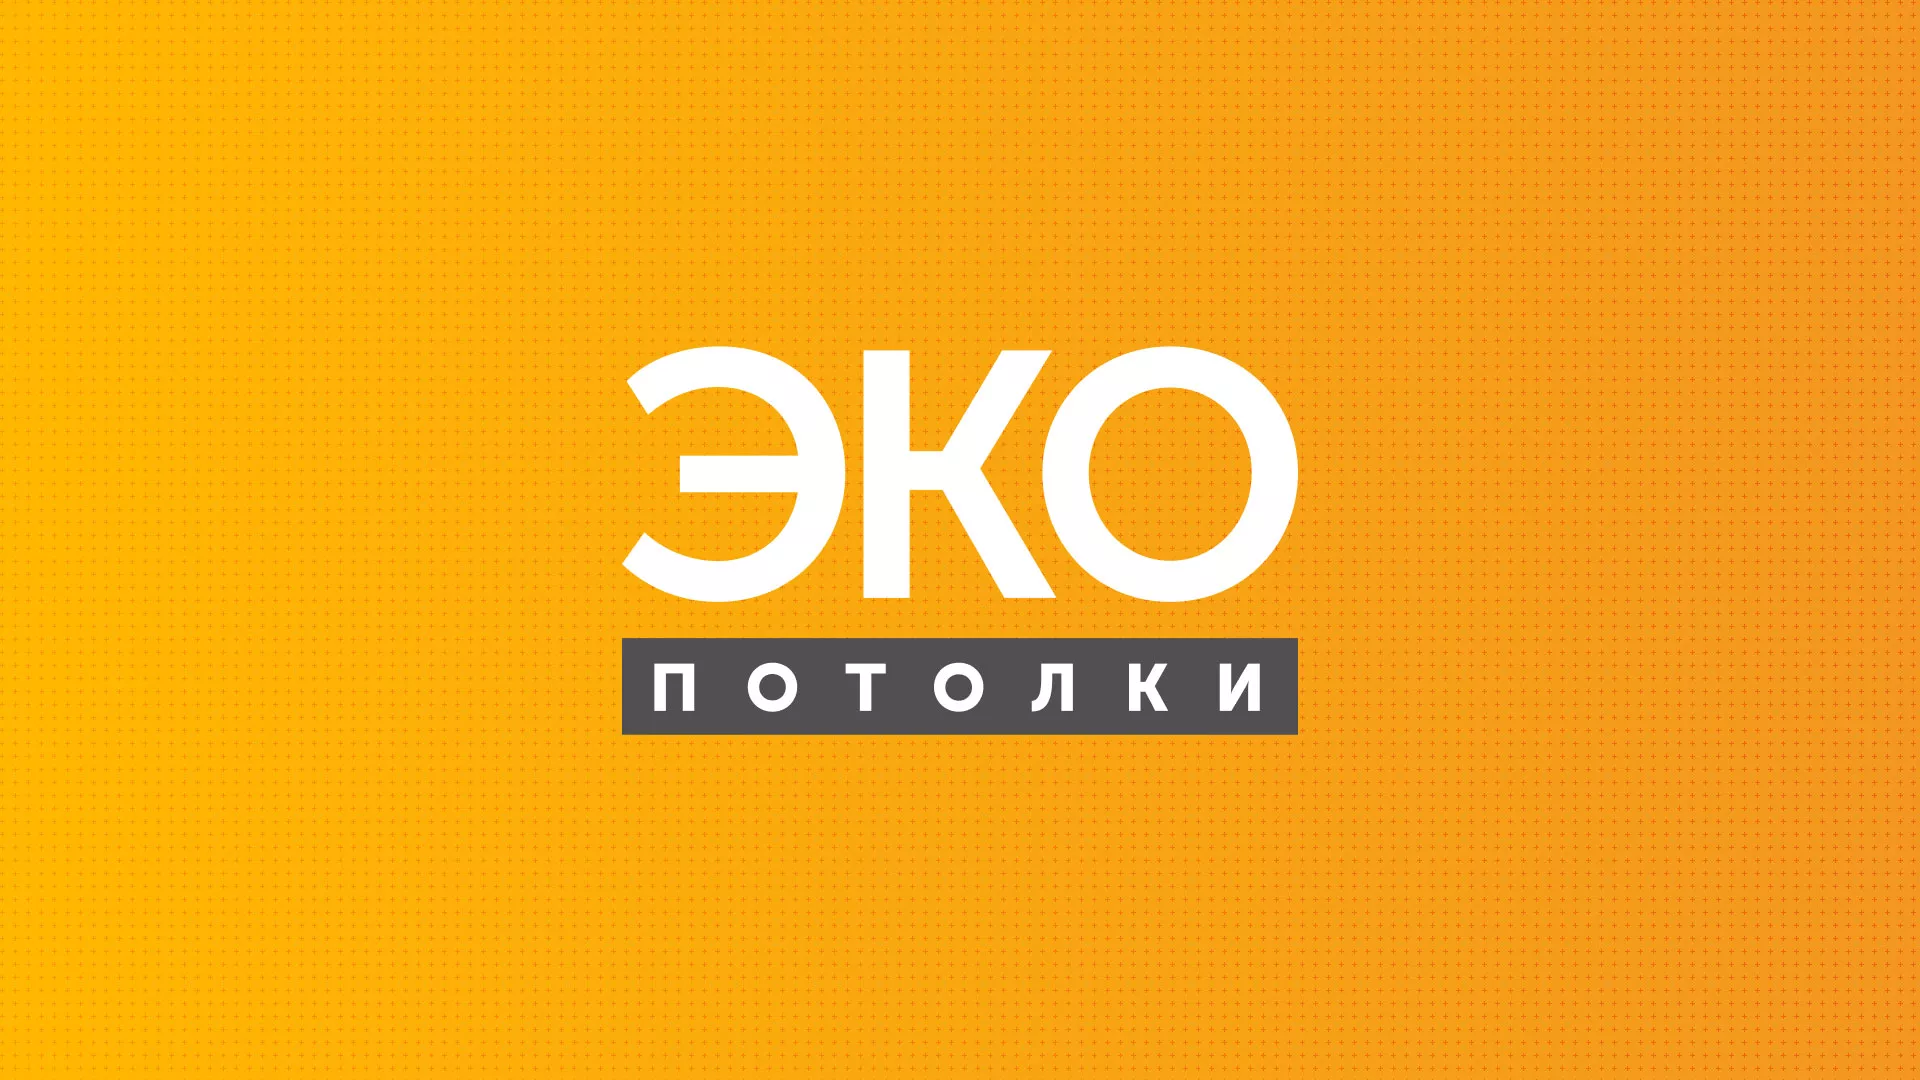 Разработка сайта по натяжным потолкам «Эко Потолки» в Лабинске